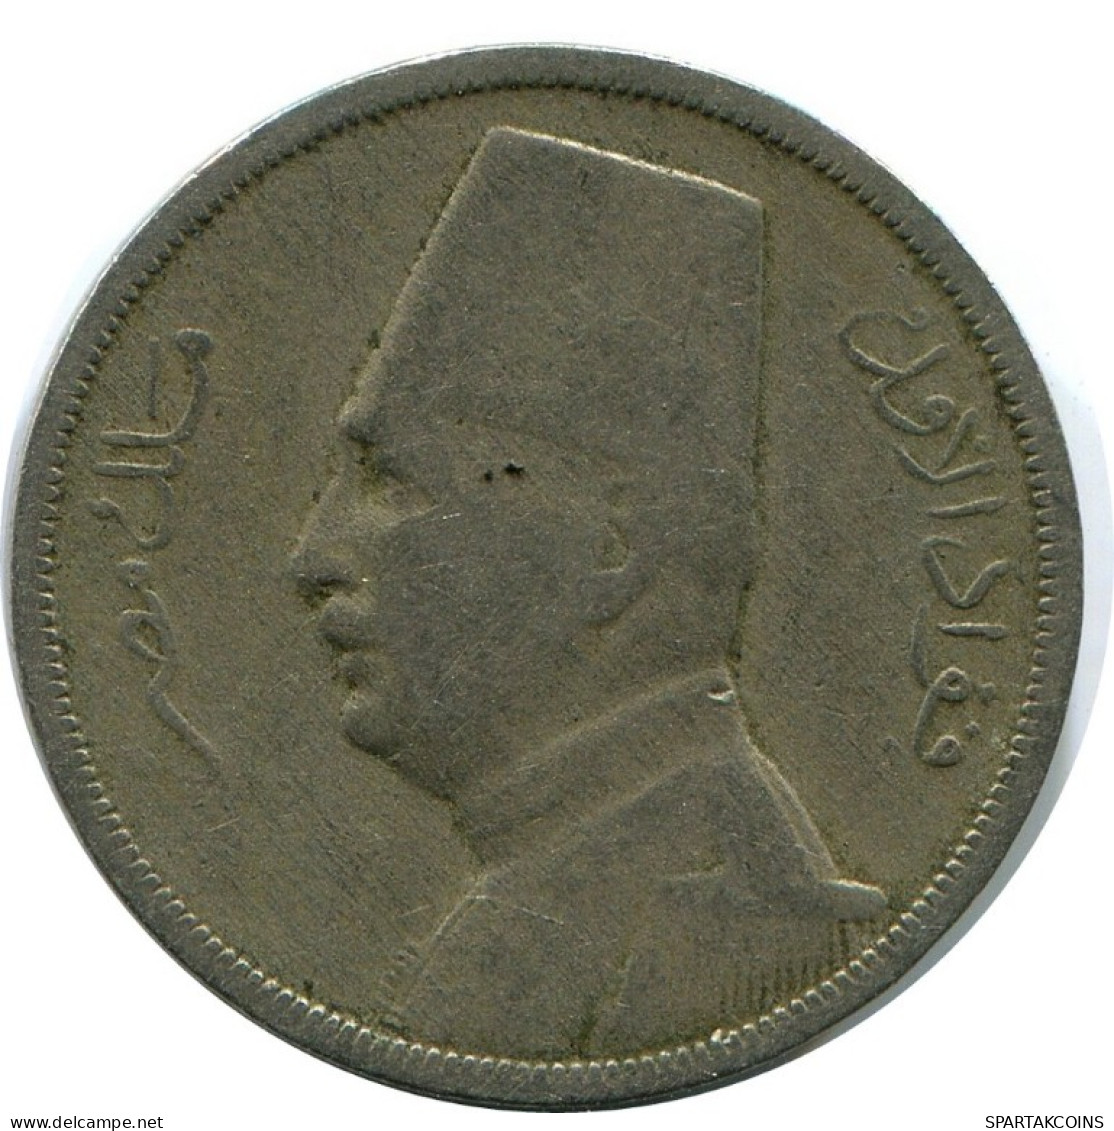 5 MILLIEMES 1929 EGYPT Islamic Coin #AH665.3.U.A - Egypt